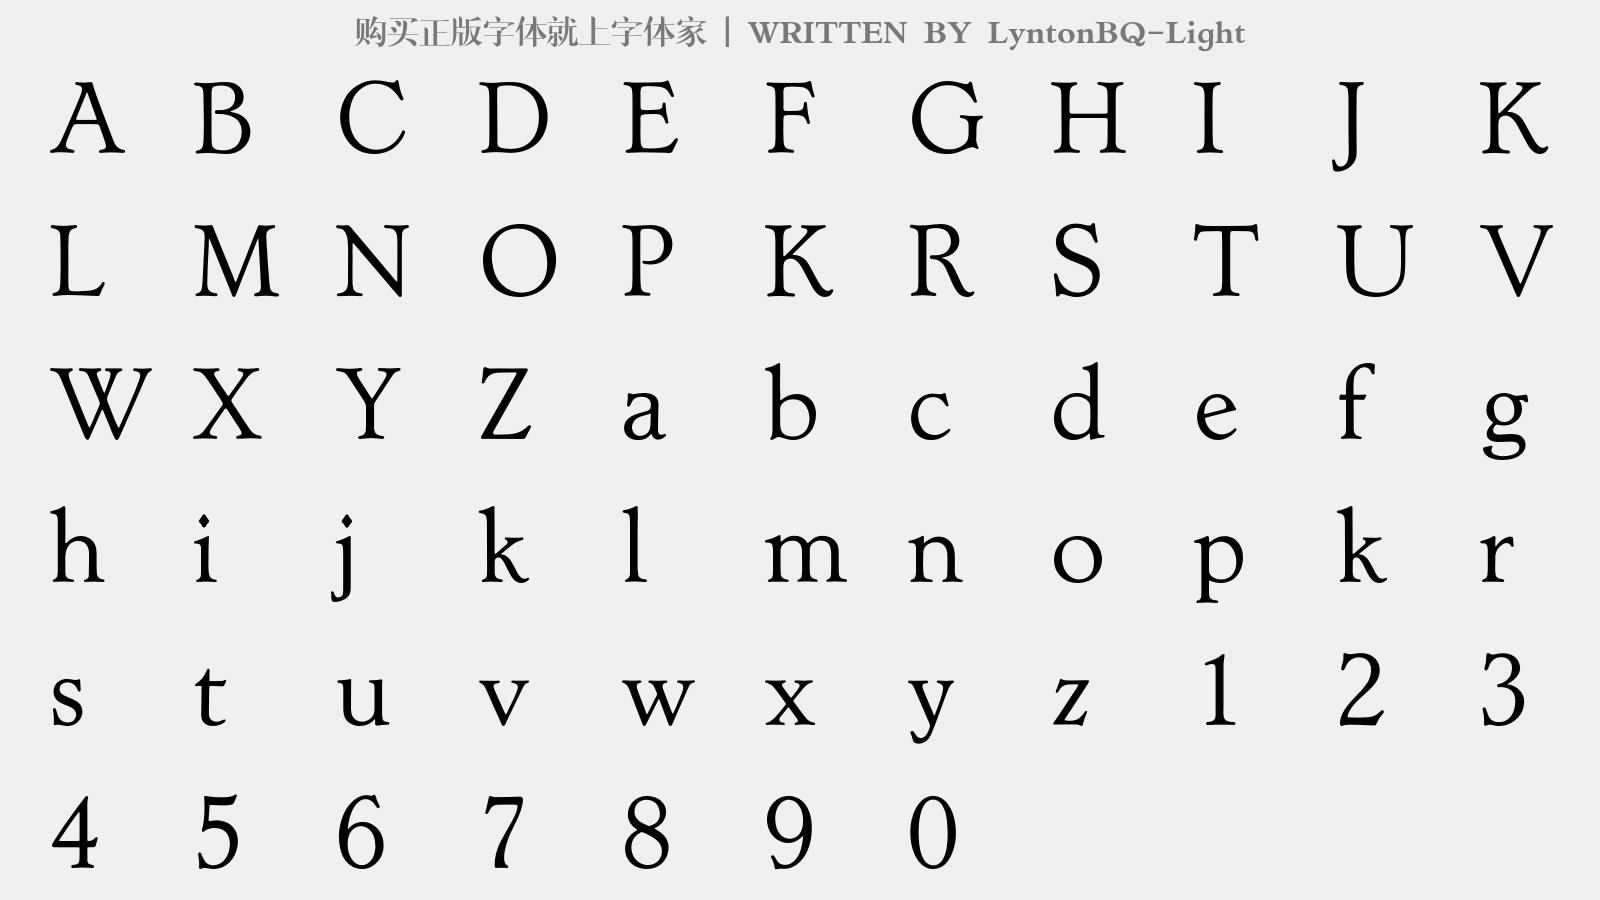 LyntonBQ-Light - 大写字母/小写字母/数字